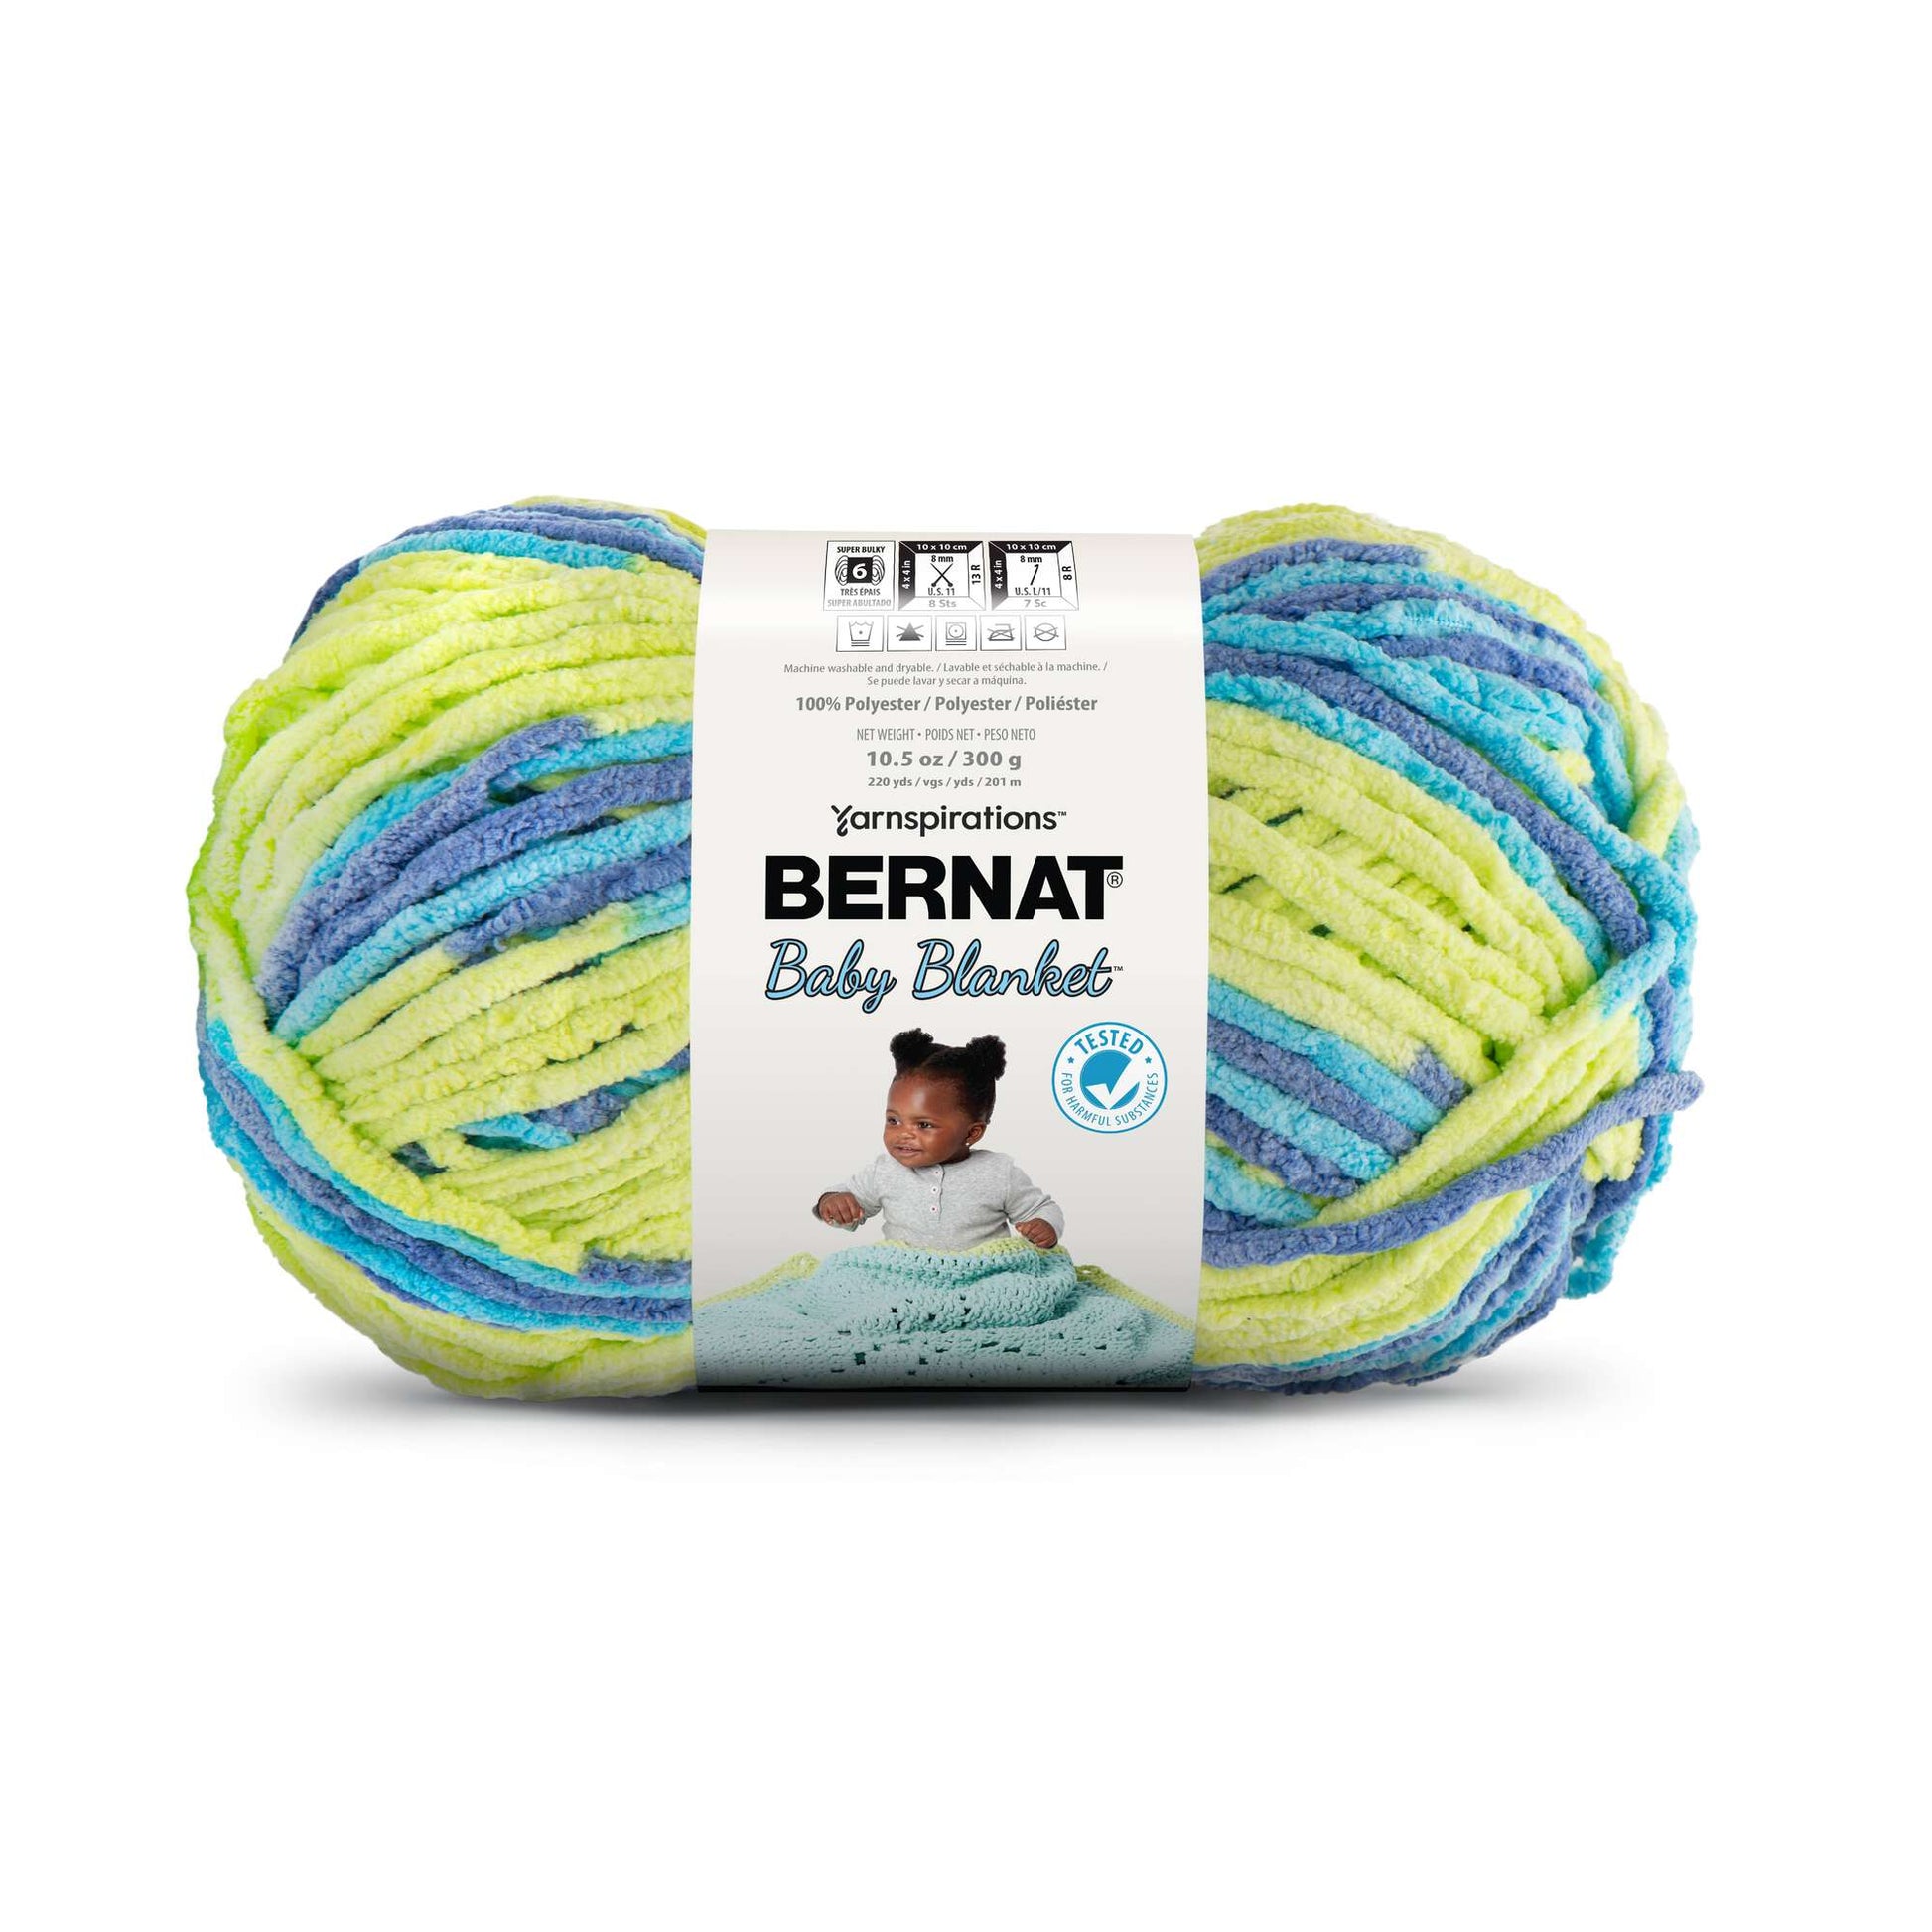 Bernat Baby Blanket Yarn (300g/10.5oz) Handsome Guy